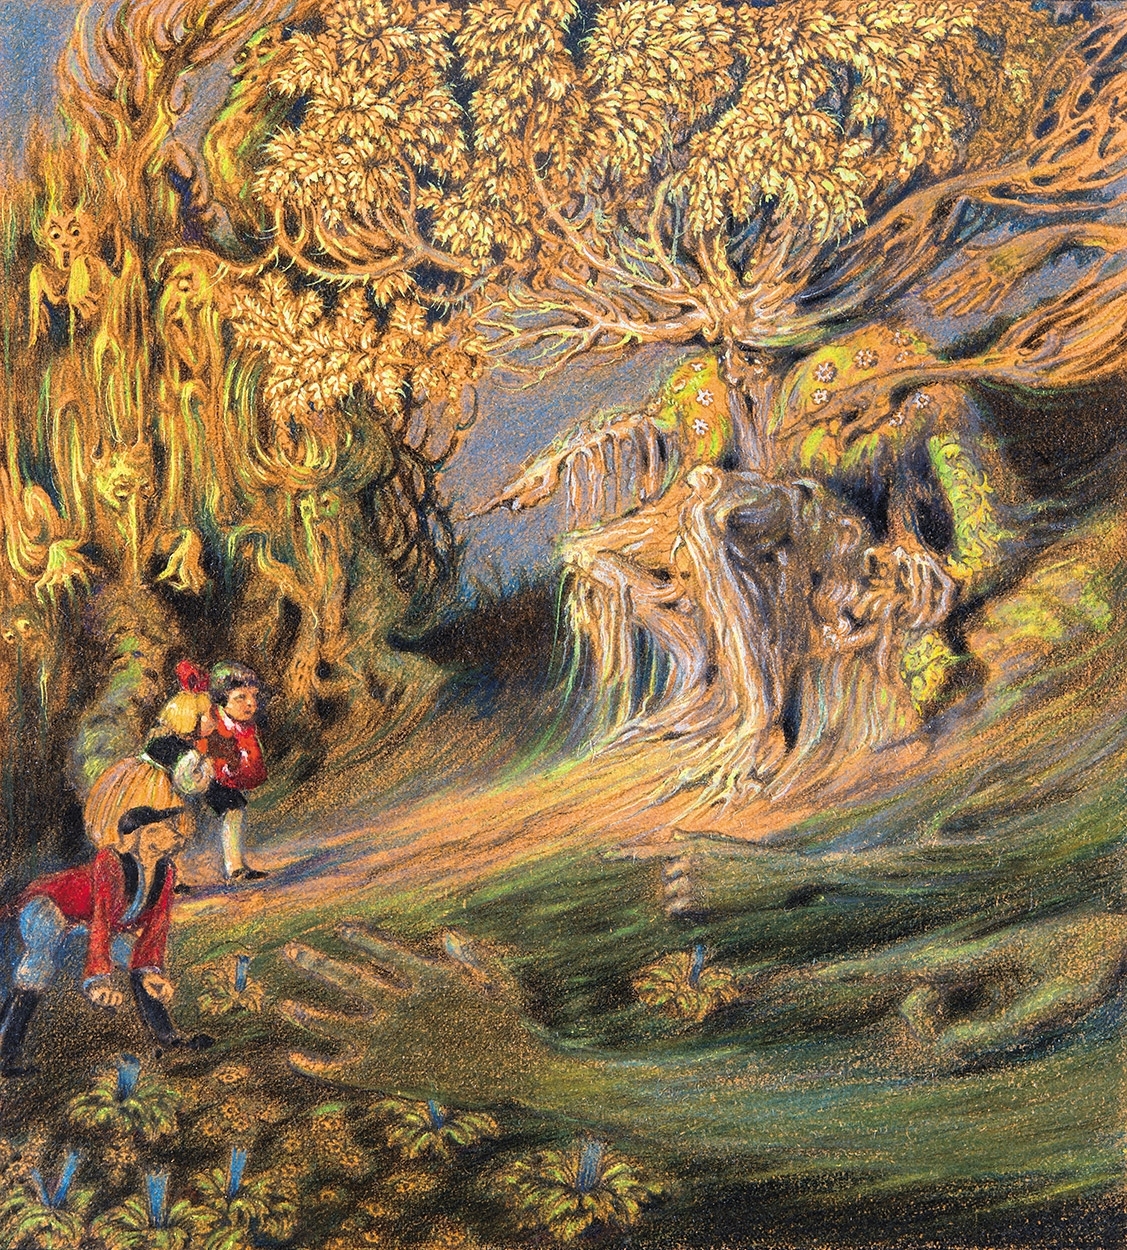 Jaschik Álmos (1885-1950) The Forest Sits in Judgement (Illustration to Blue Bird by Maurice Maeterlinck)